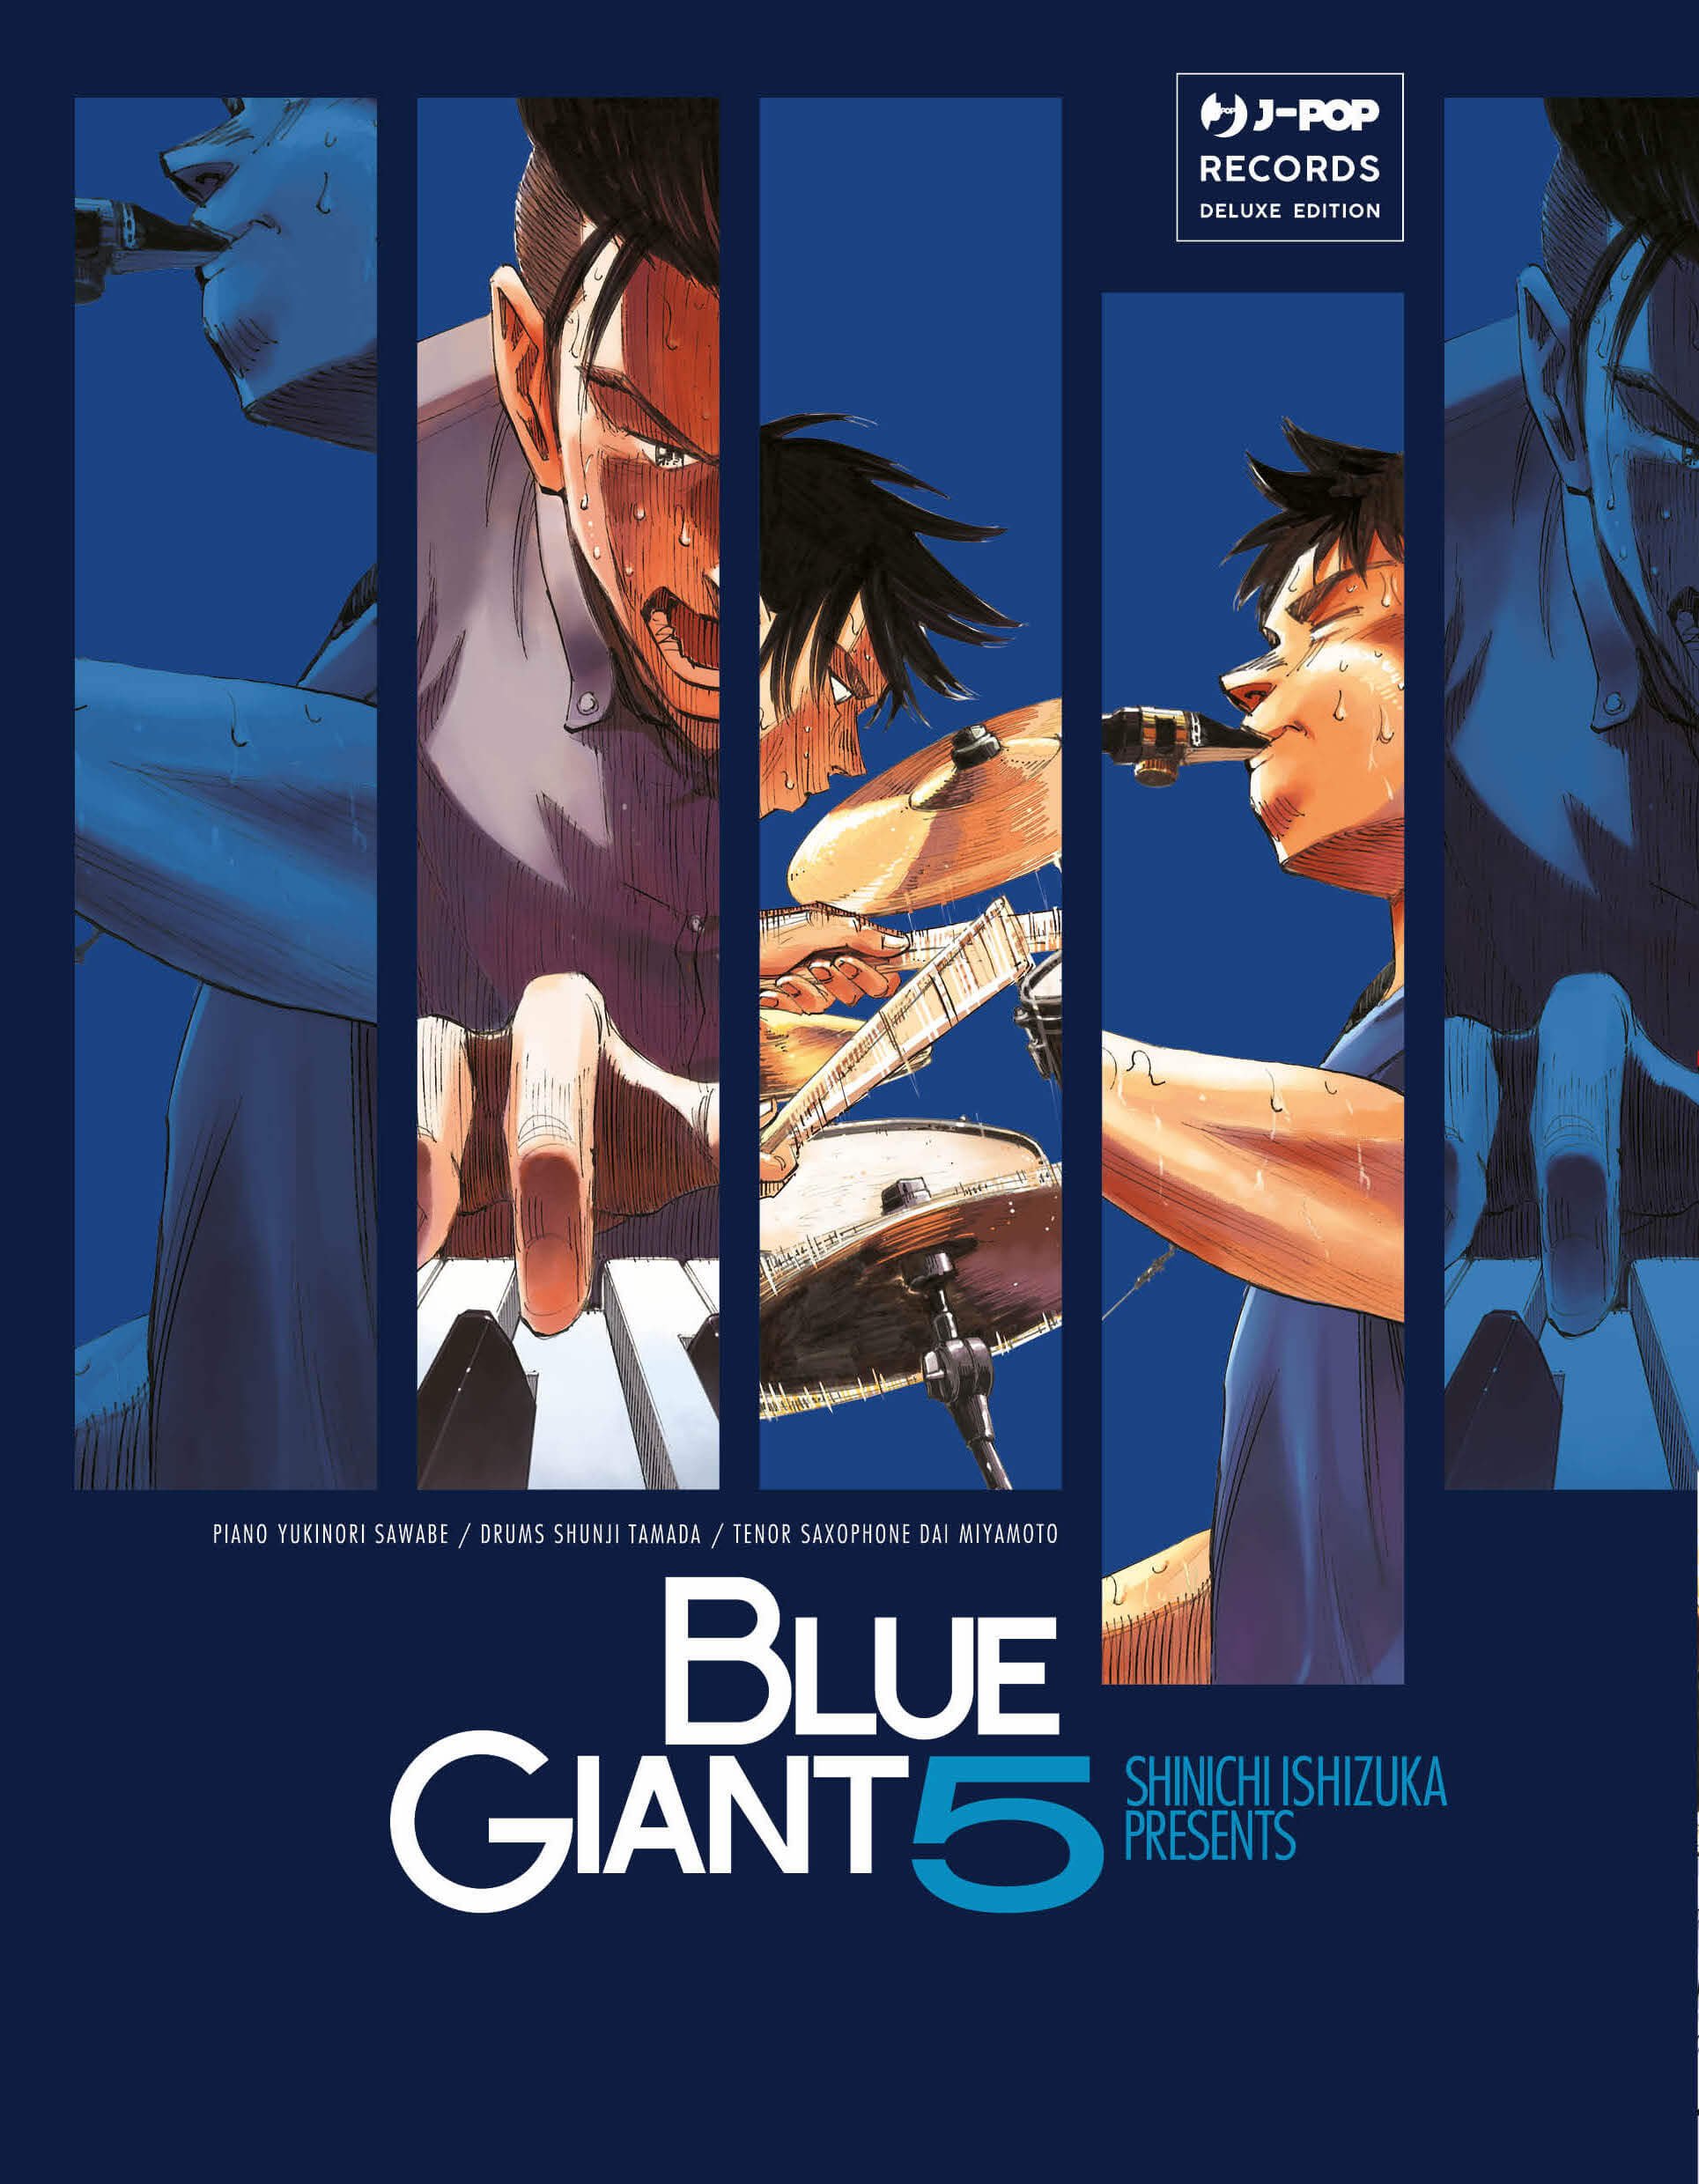 Blue Giant 5, parmi les sorties J-Pop Manga du 8 février 2023